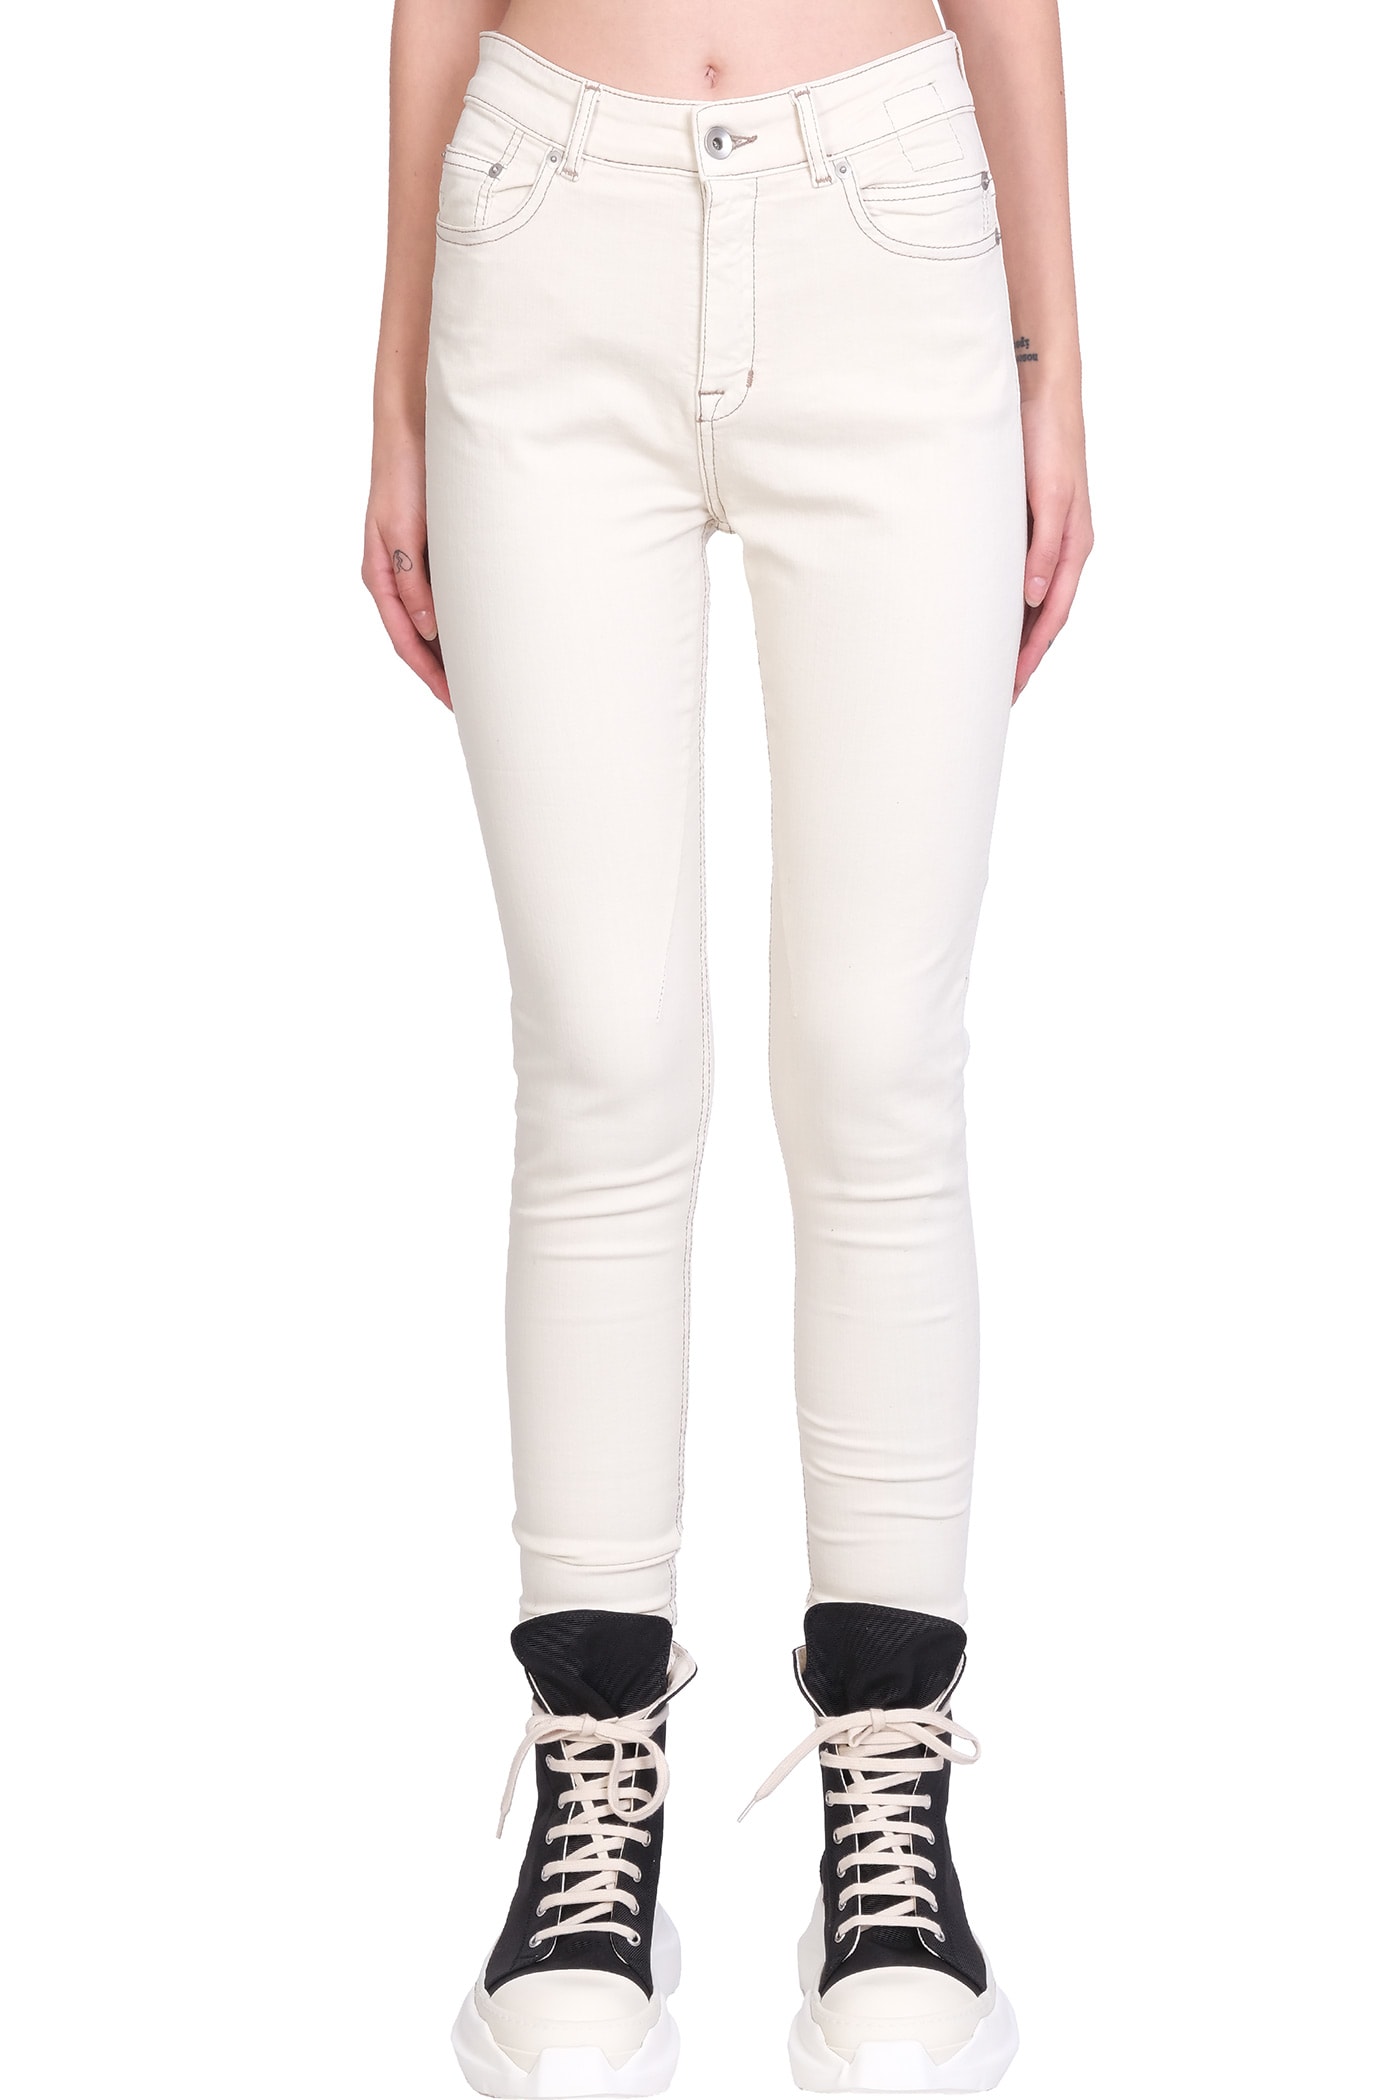 DRKSHDW Dtroit Cut Jeans In White Denim